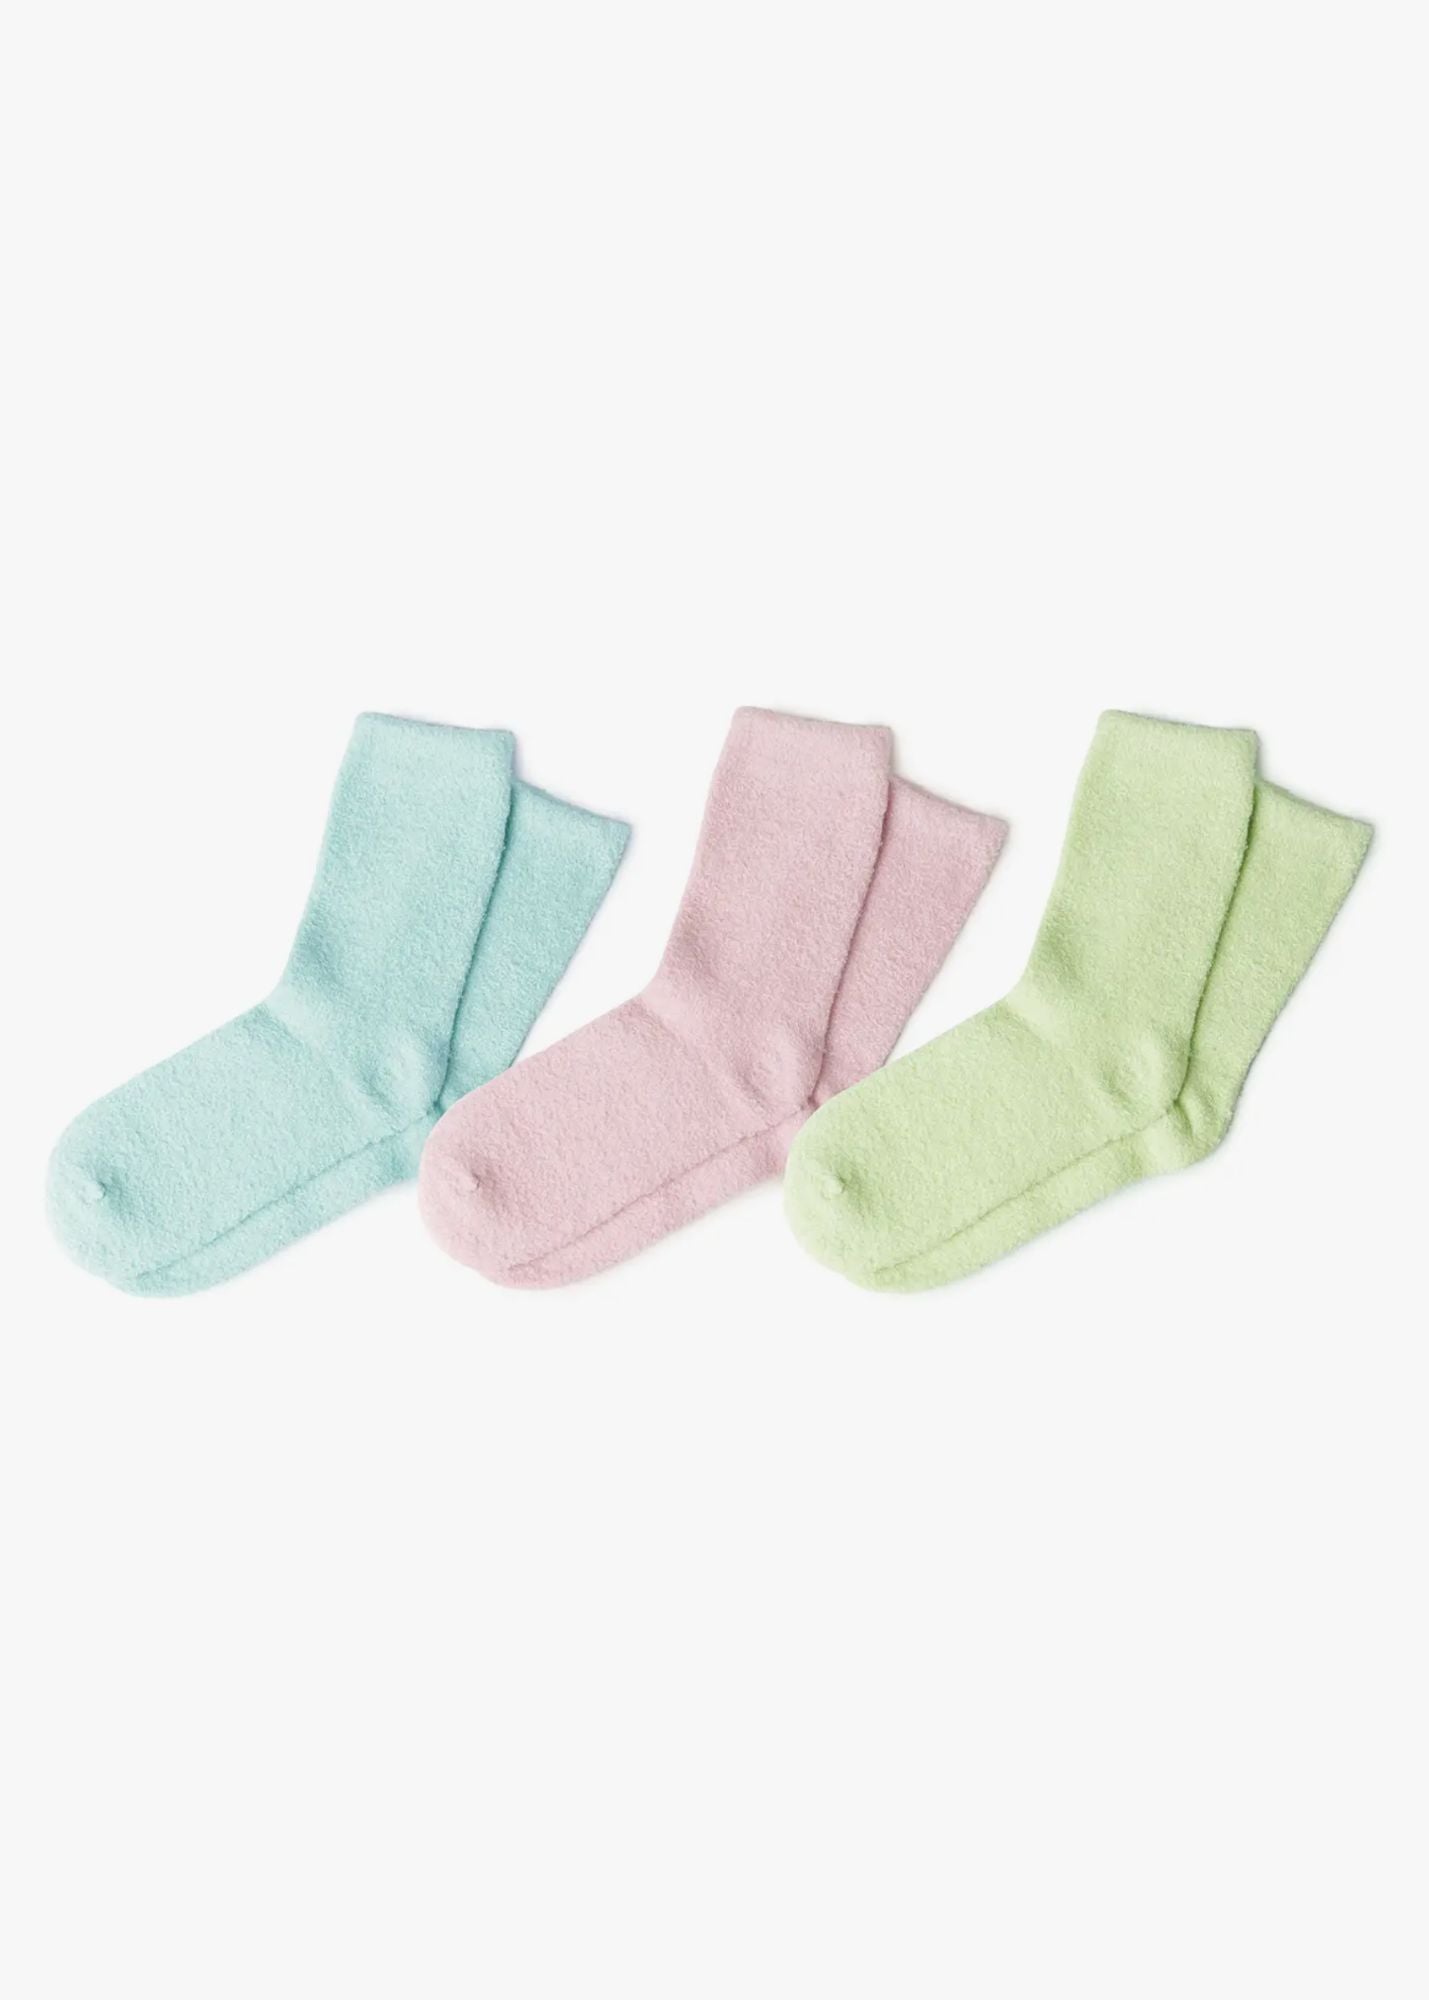 Aloe Super Soft Spa Socks Accessories